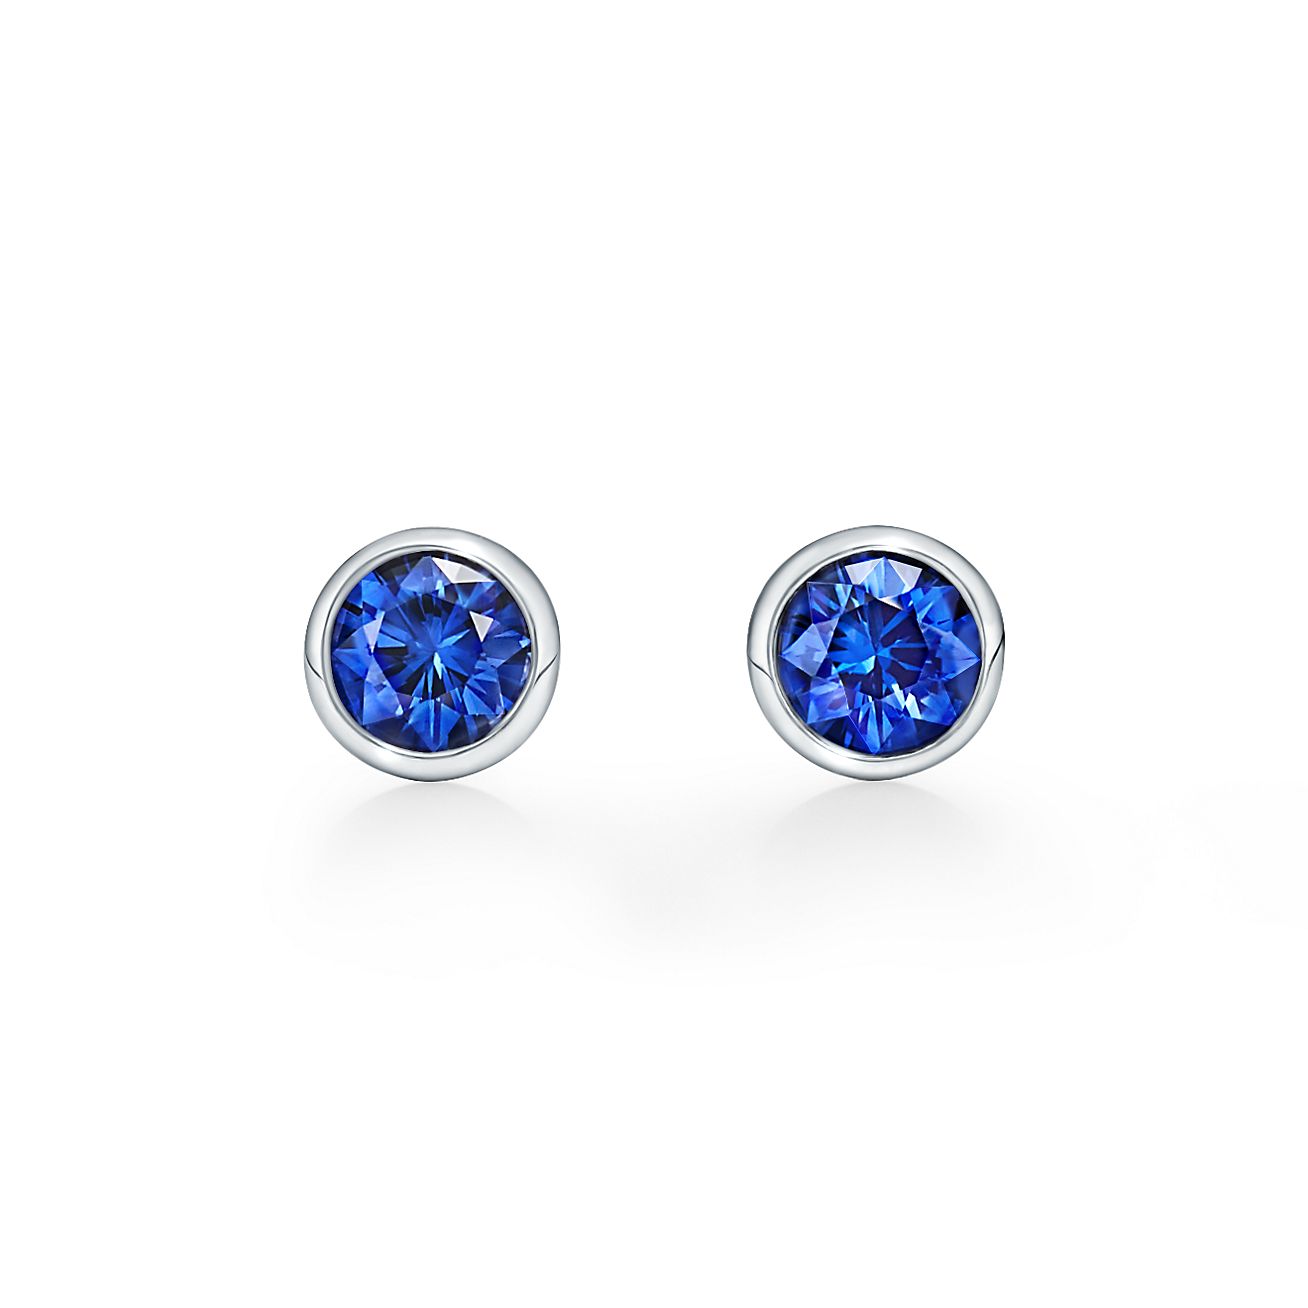 sapphire earrings tiffany